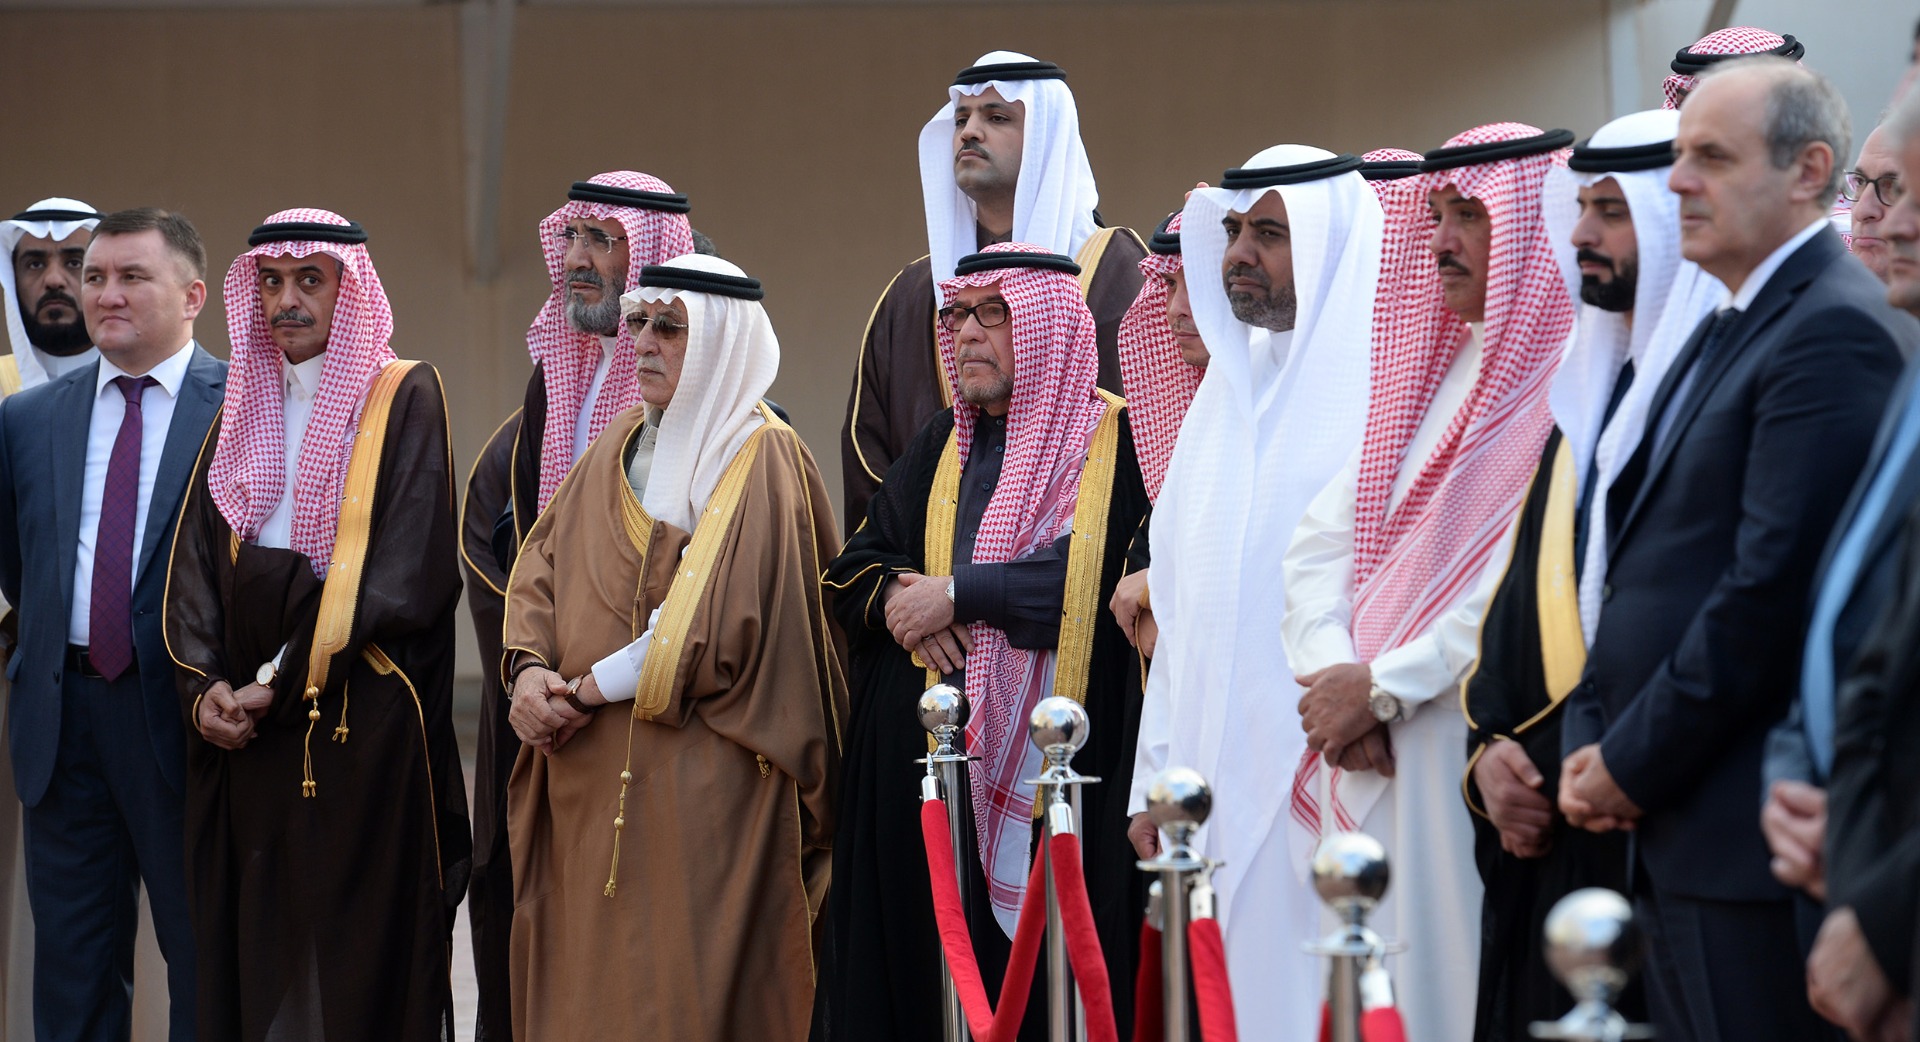 Правление в саудовской аравии. Династия Аль Сауд. Саудовская Аравия Династия Аль Сауд. Эр Рияд принц. Семья королевства Саудовской Аравии.